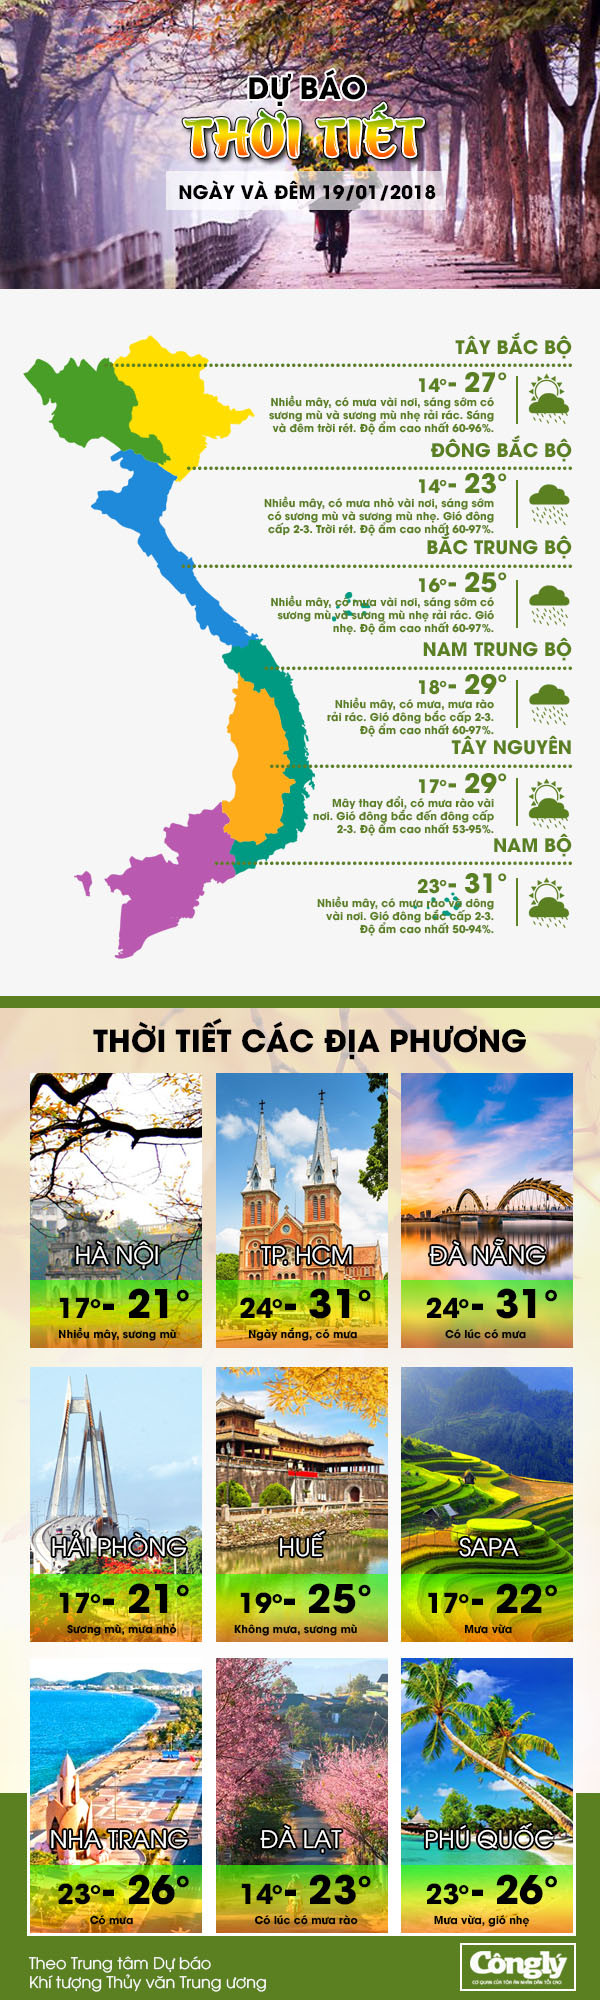 Thủ đô Hà Nội và các tỉnh Đông Bắc Bộ trưa chiều tạnh ráo